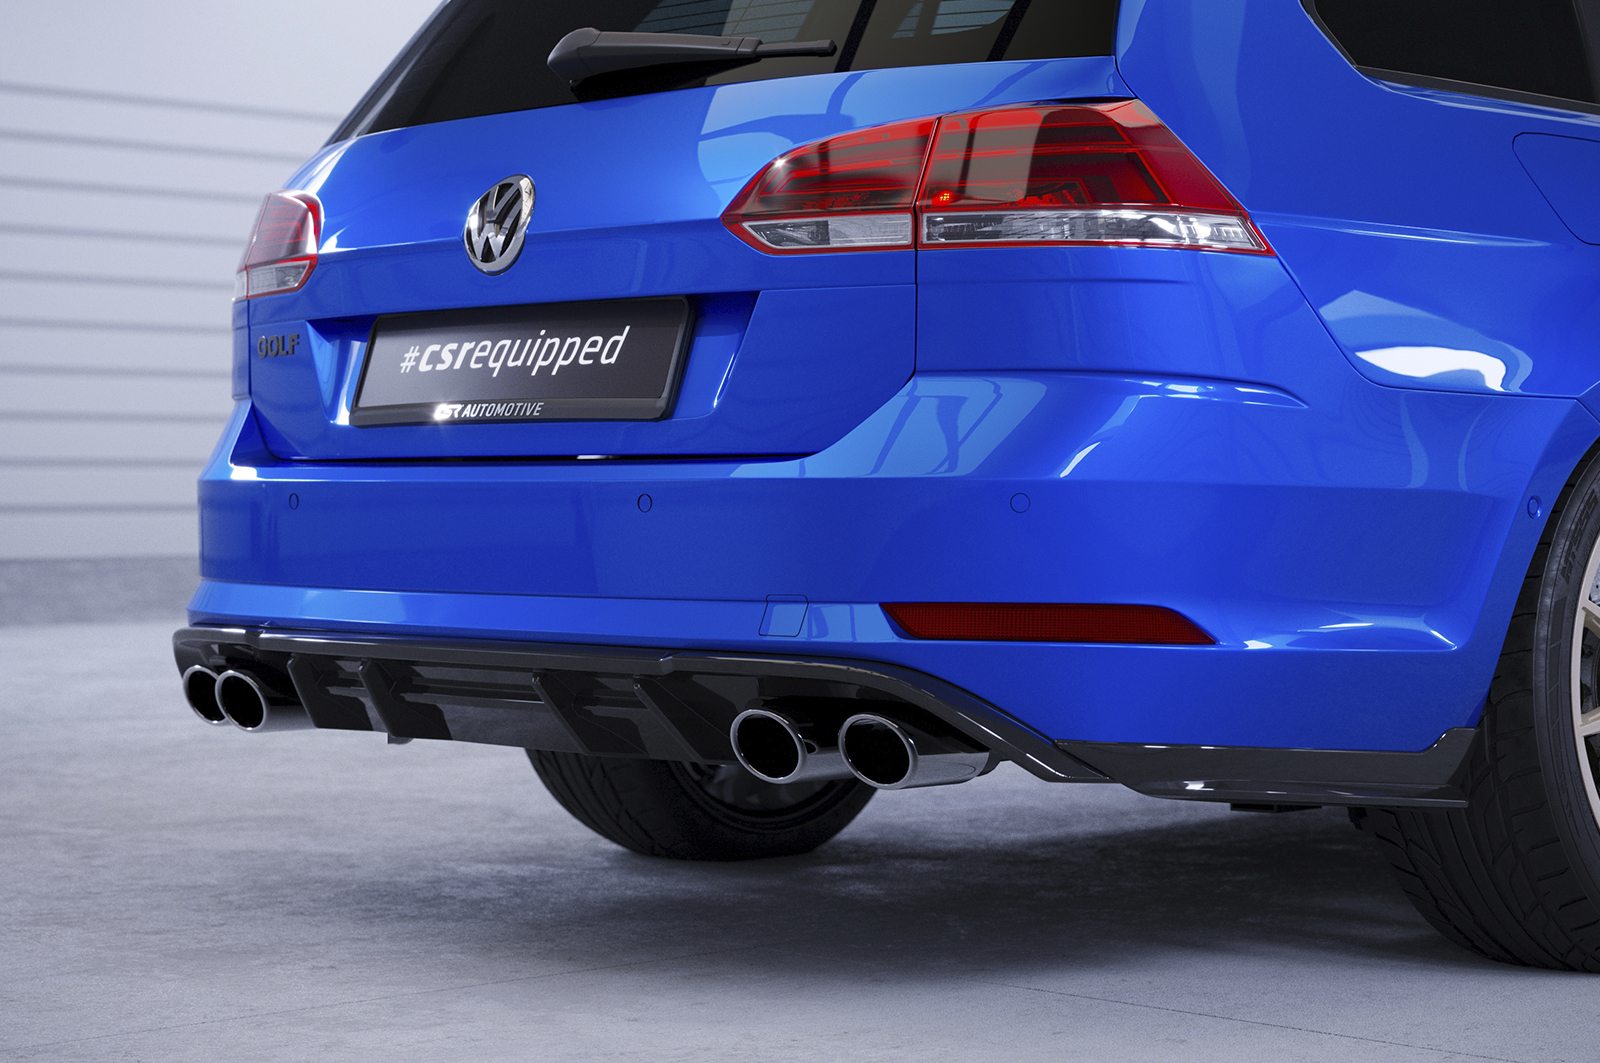 Racing Heckansatz Diffusor für VW Golf 7 R Variant Vorfacelift